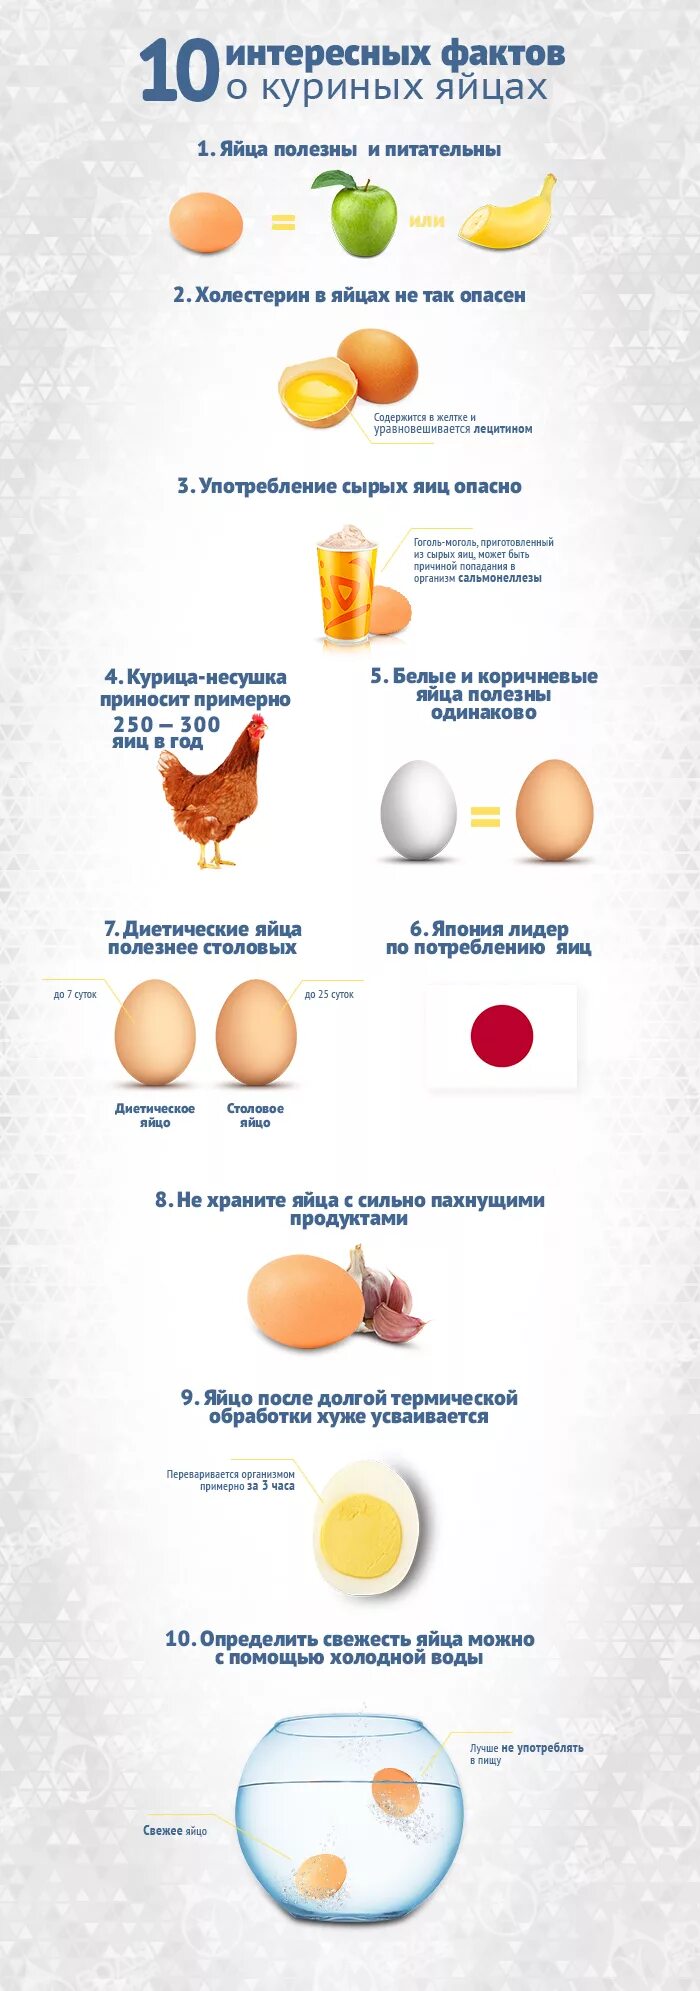 Факты о яйцах. Факты о яйцах куриных. Интересные факты о яйцах. Интересные факты о яйцах курицы.